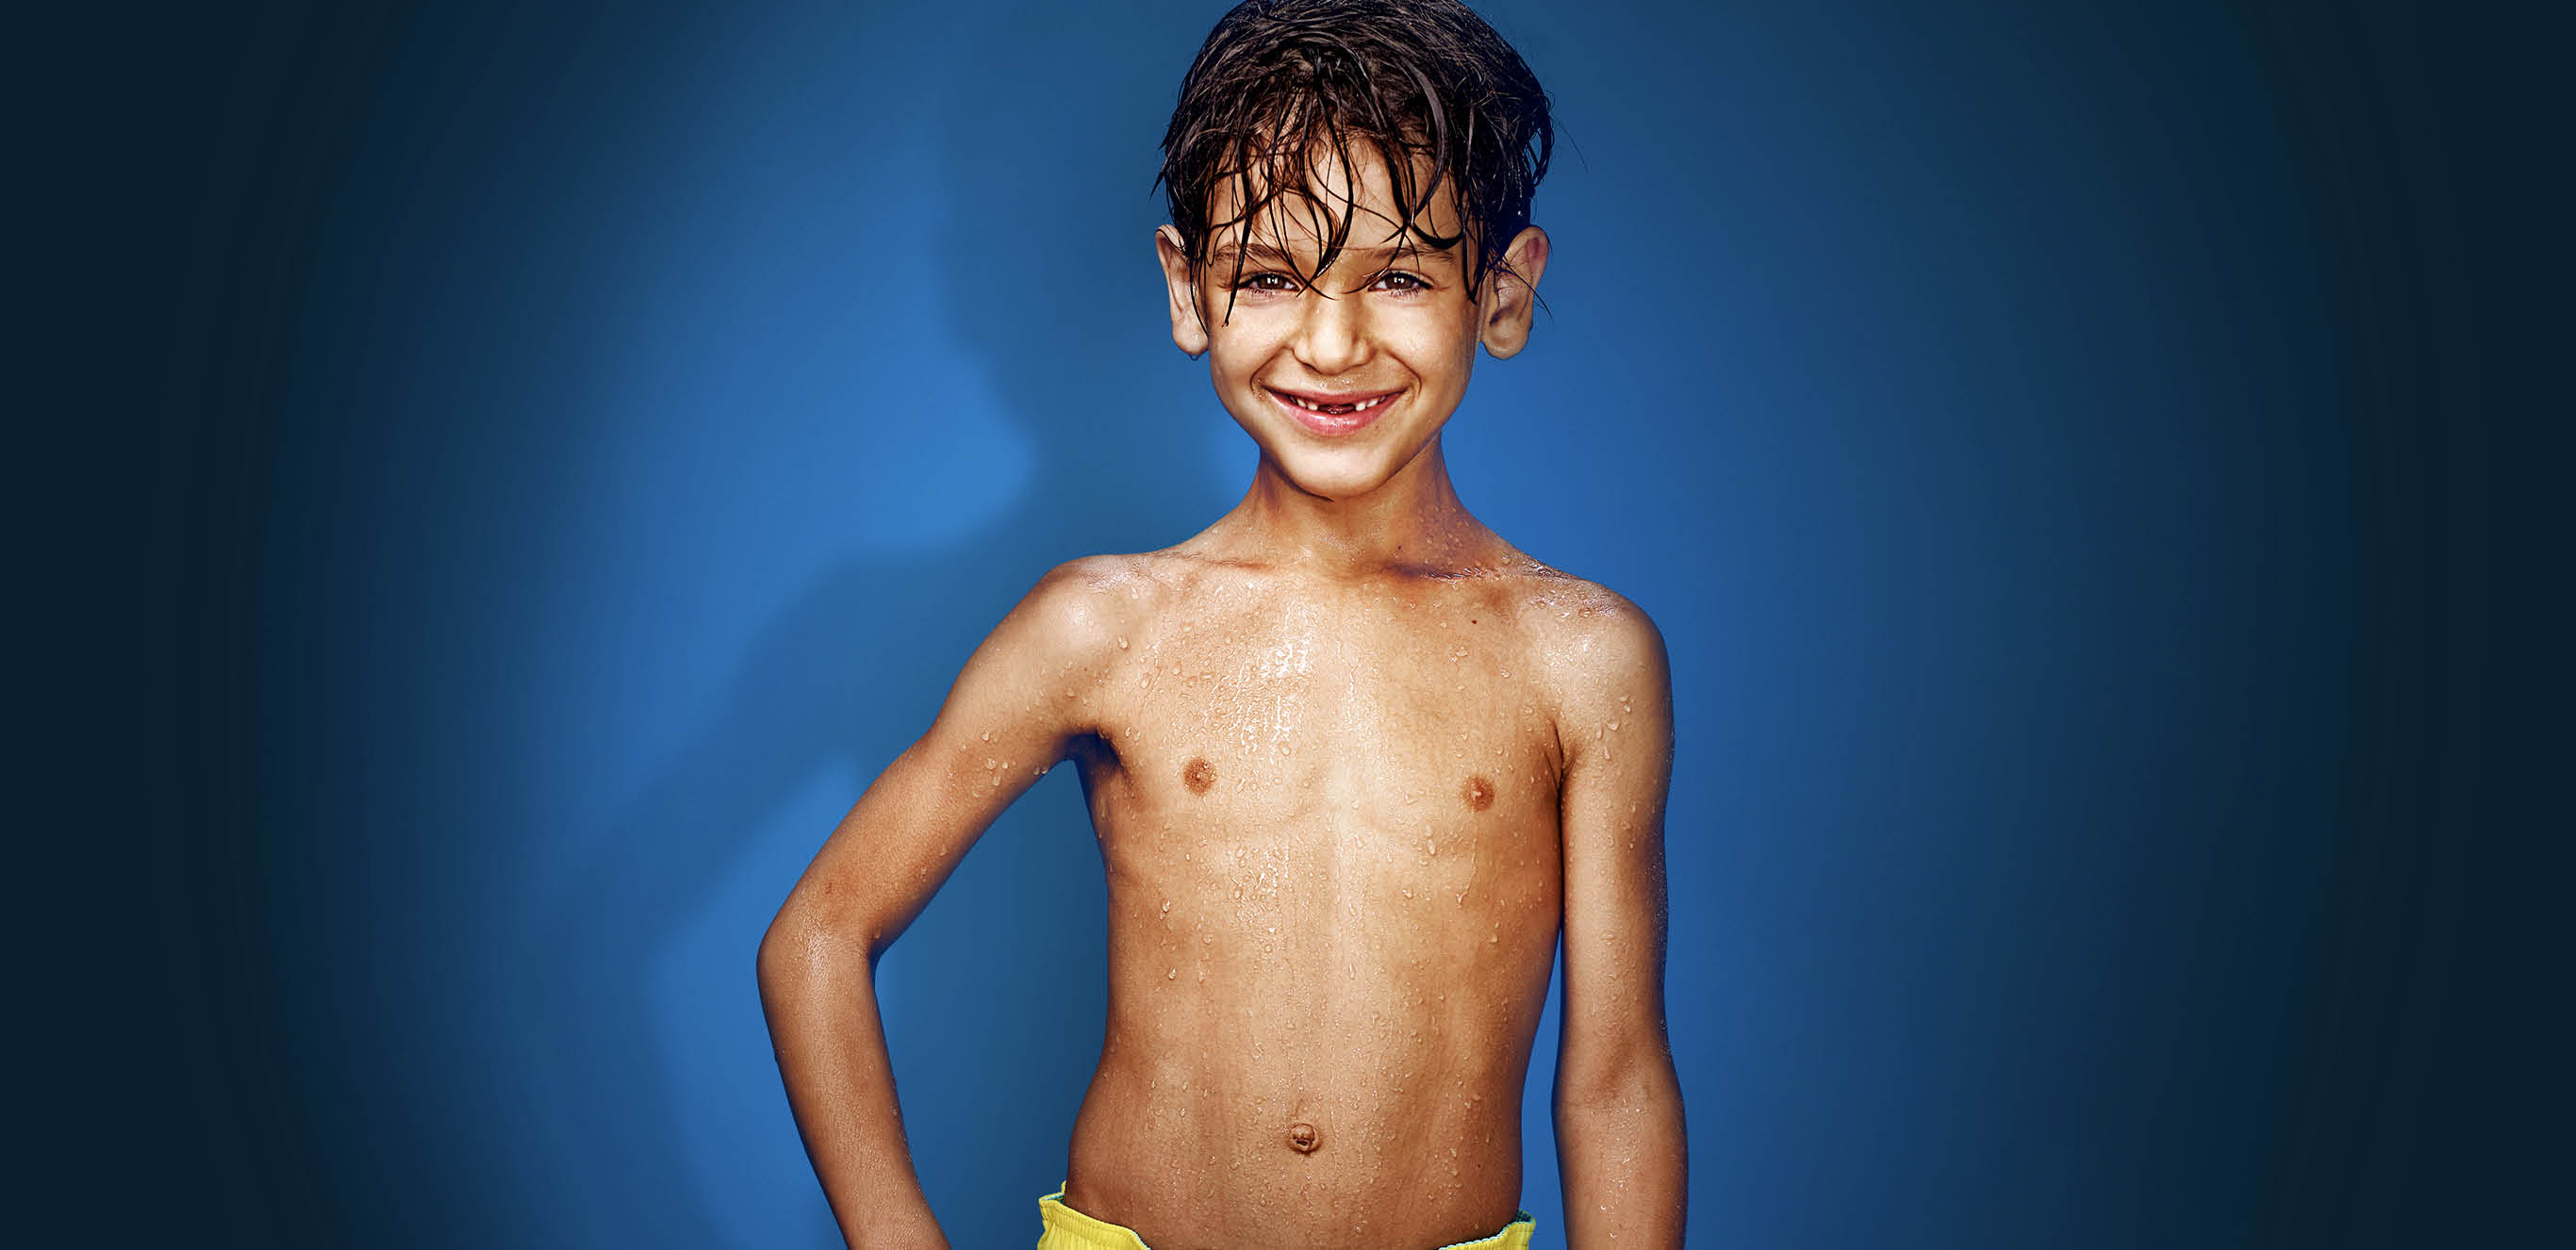 Junge mit gelber Badehose vor blauem Hintergrund